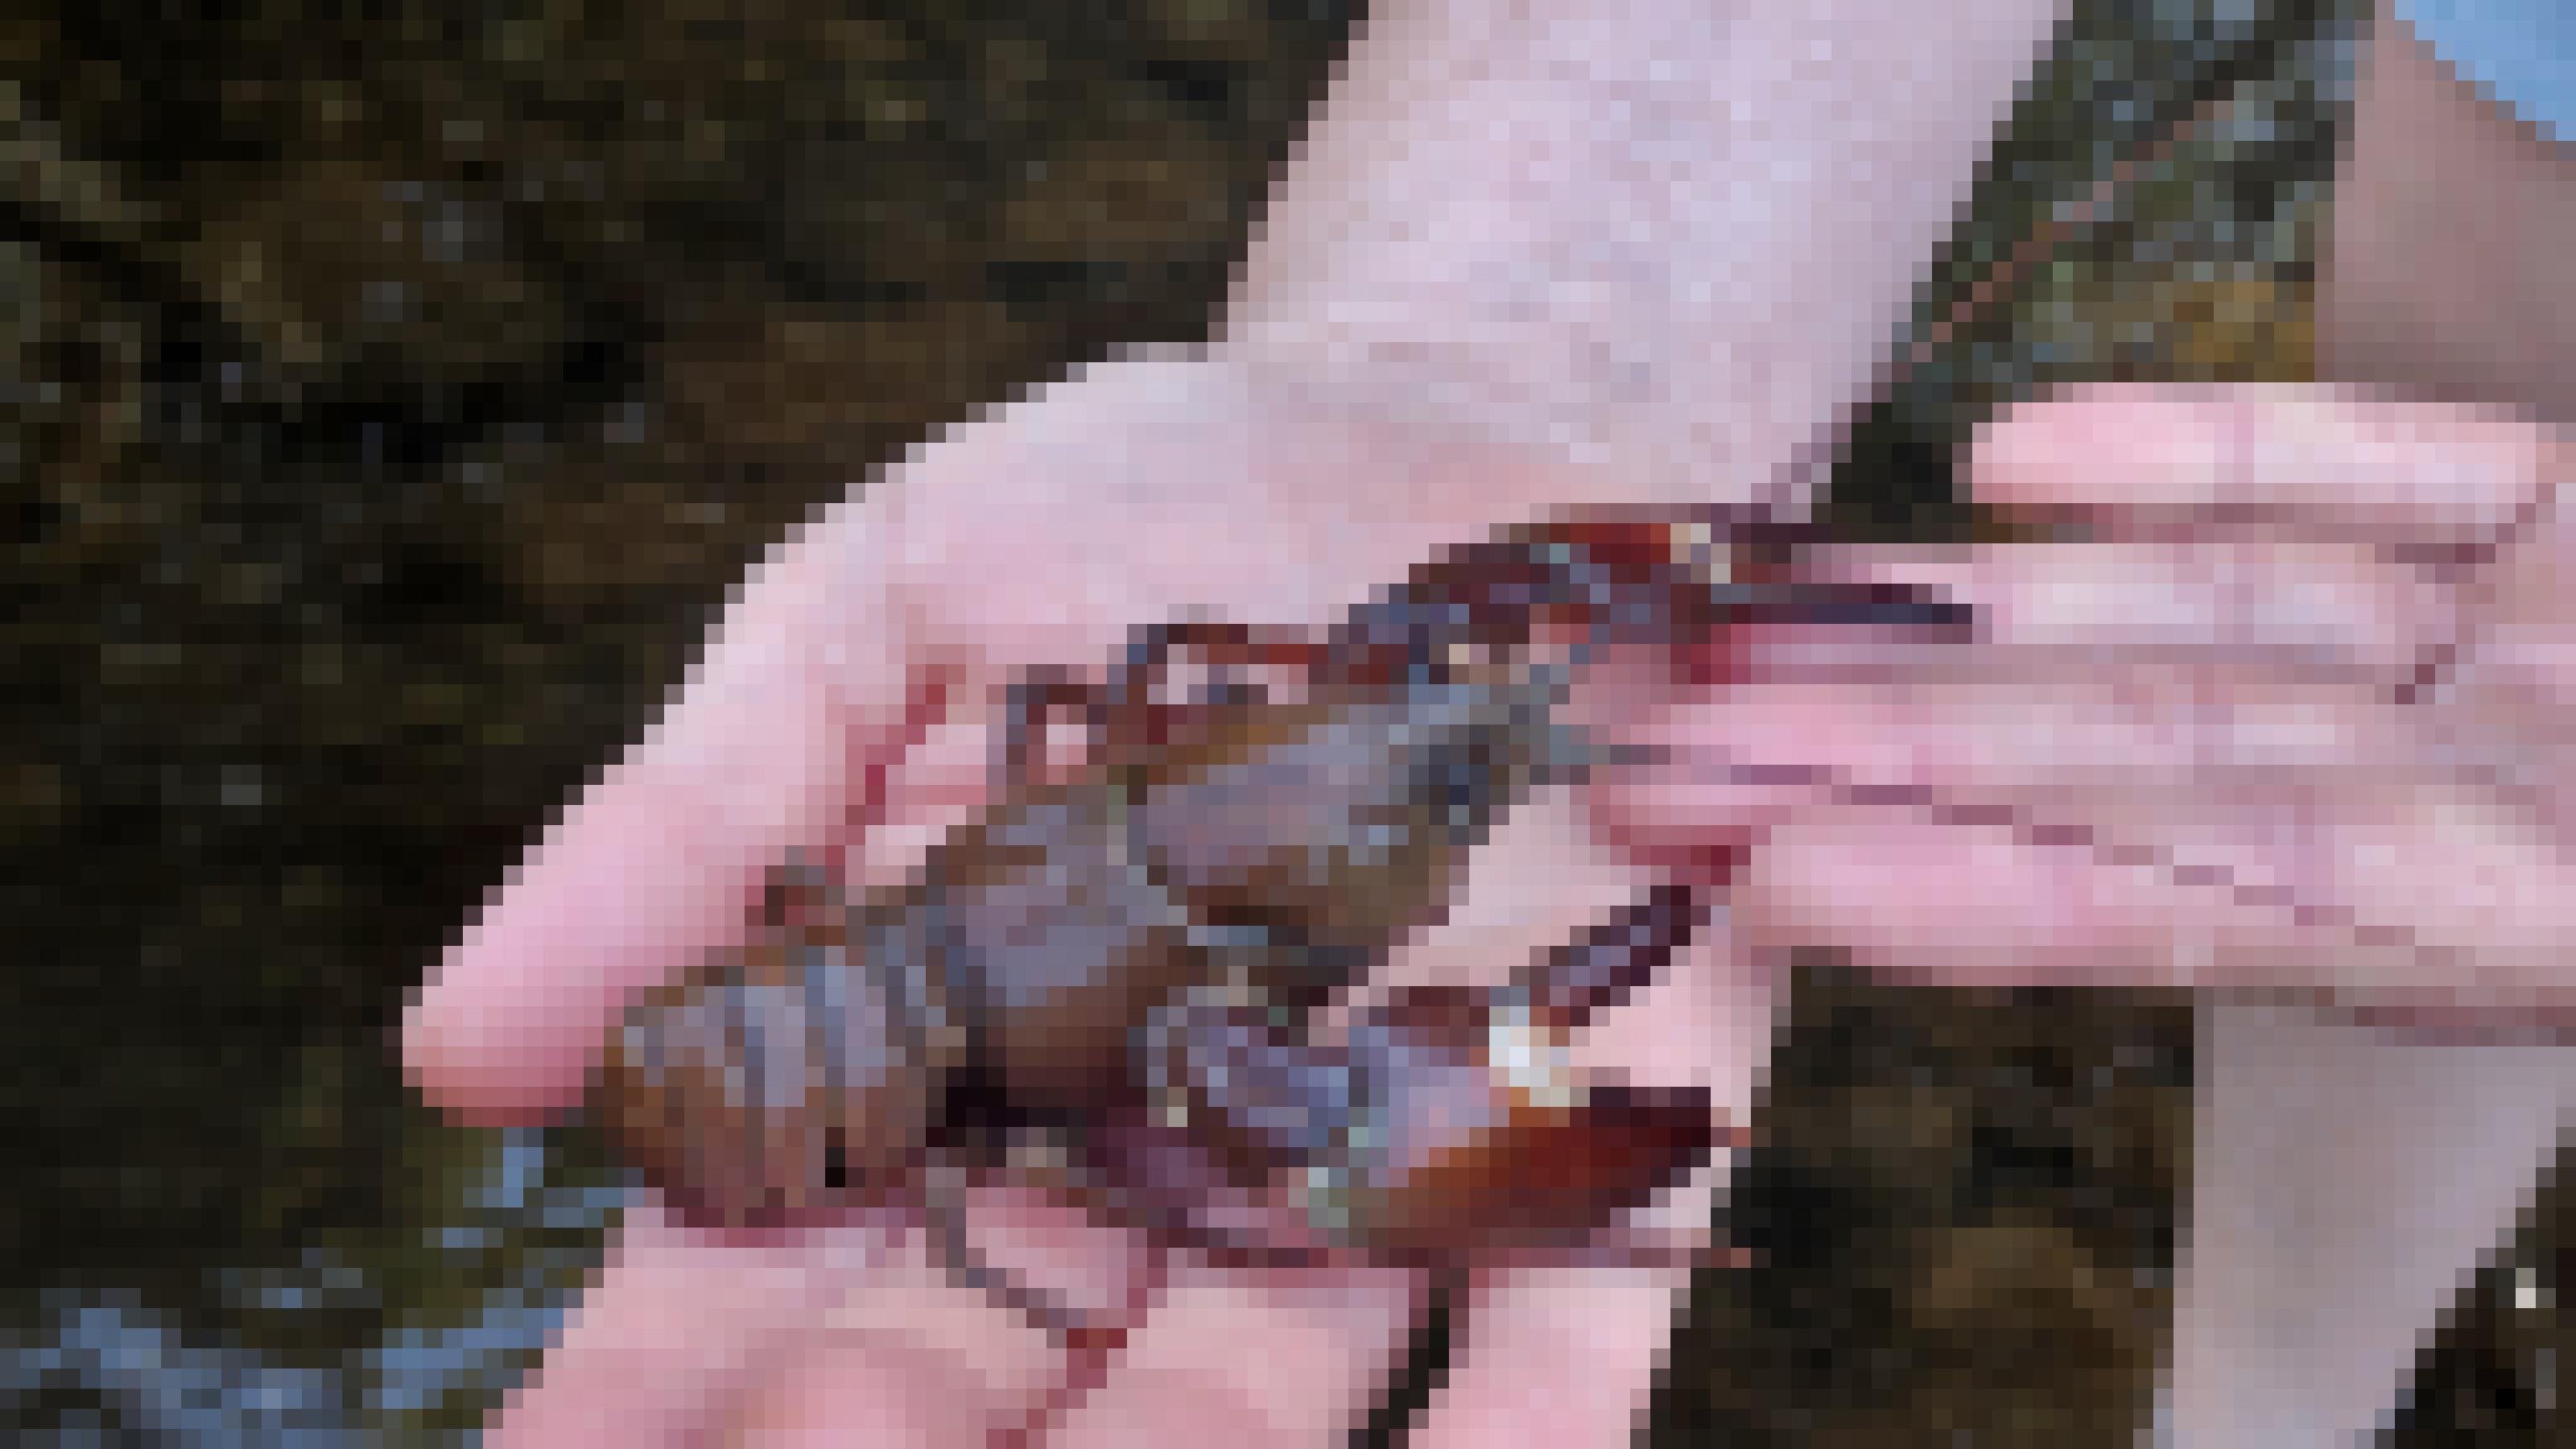 Ein bräunlicher Krebs mit rötlichen Scheren und langen Fühlern sitzt auf einer menschlichen Hand.